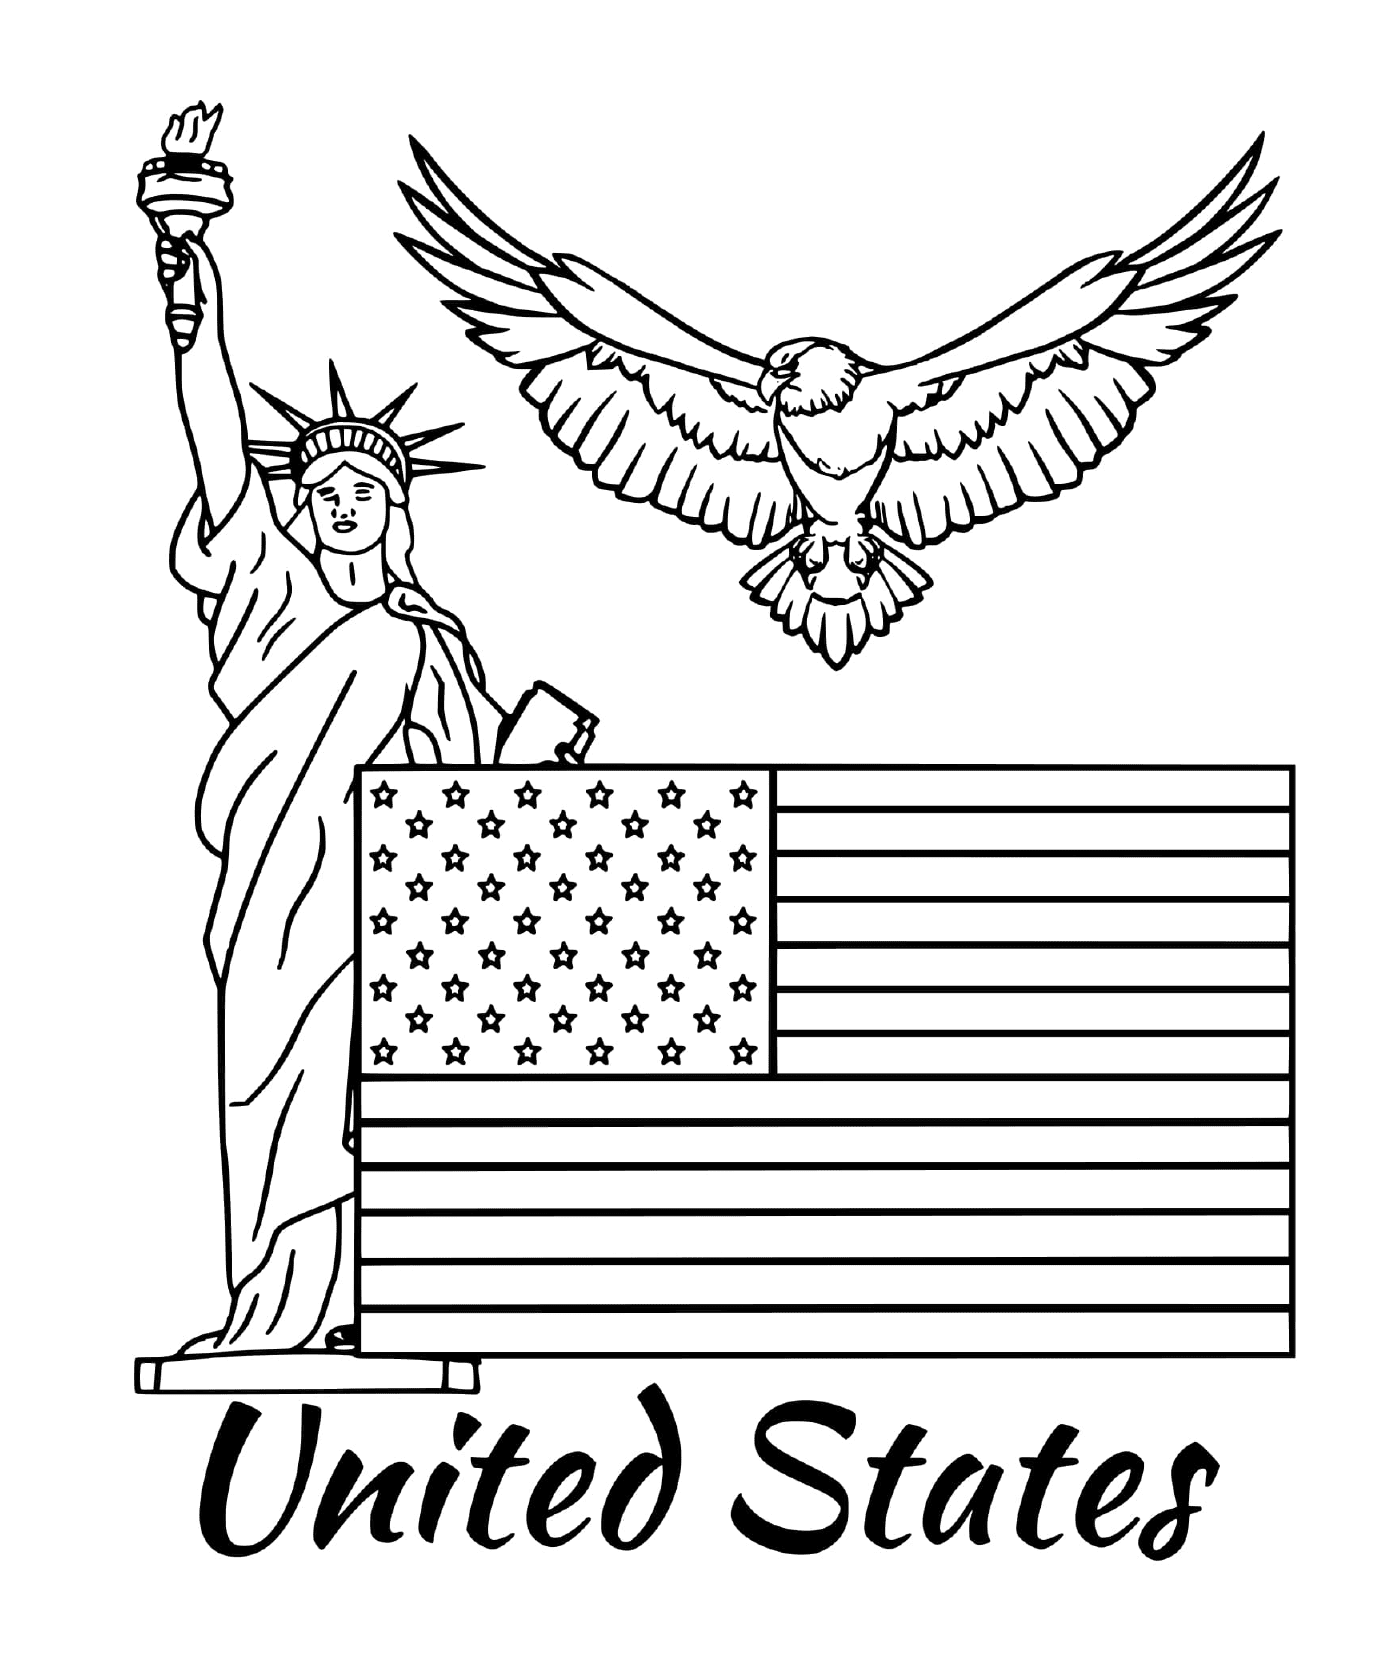  Флаг Соединенных Штатов 